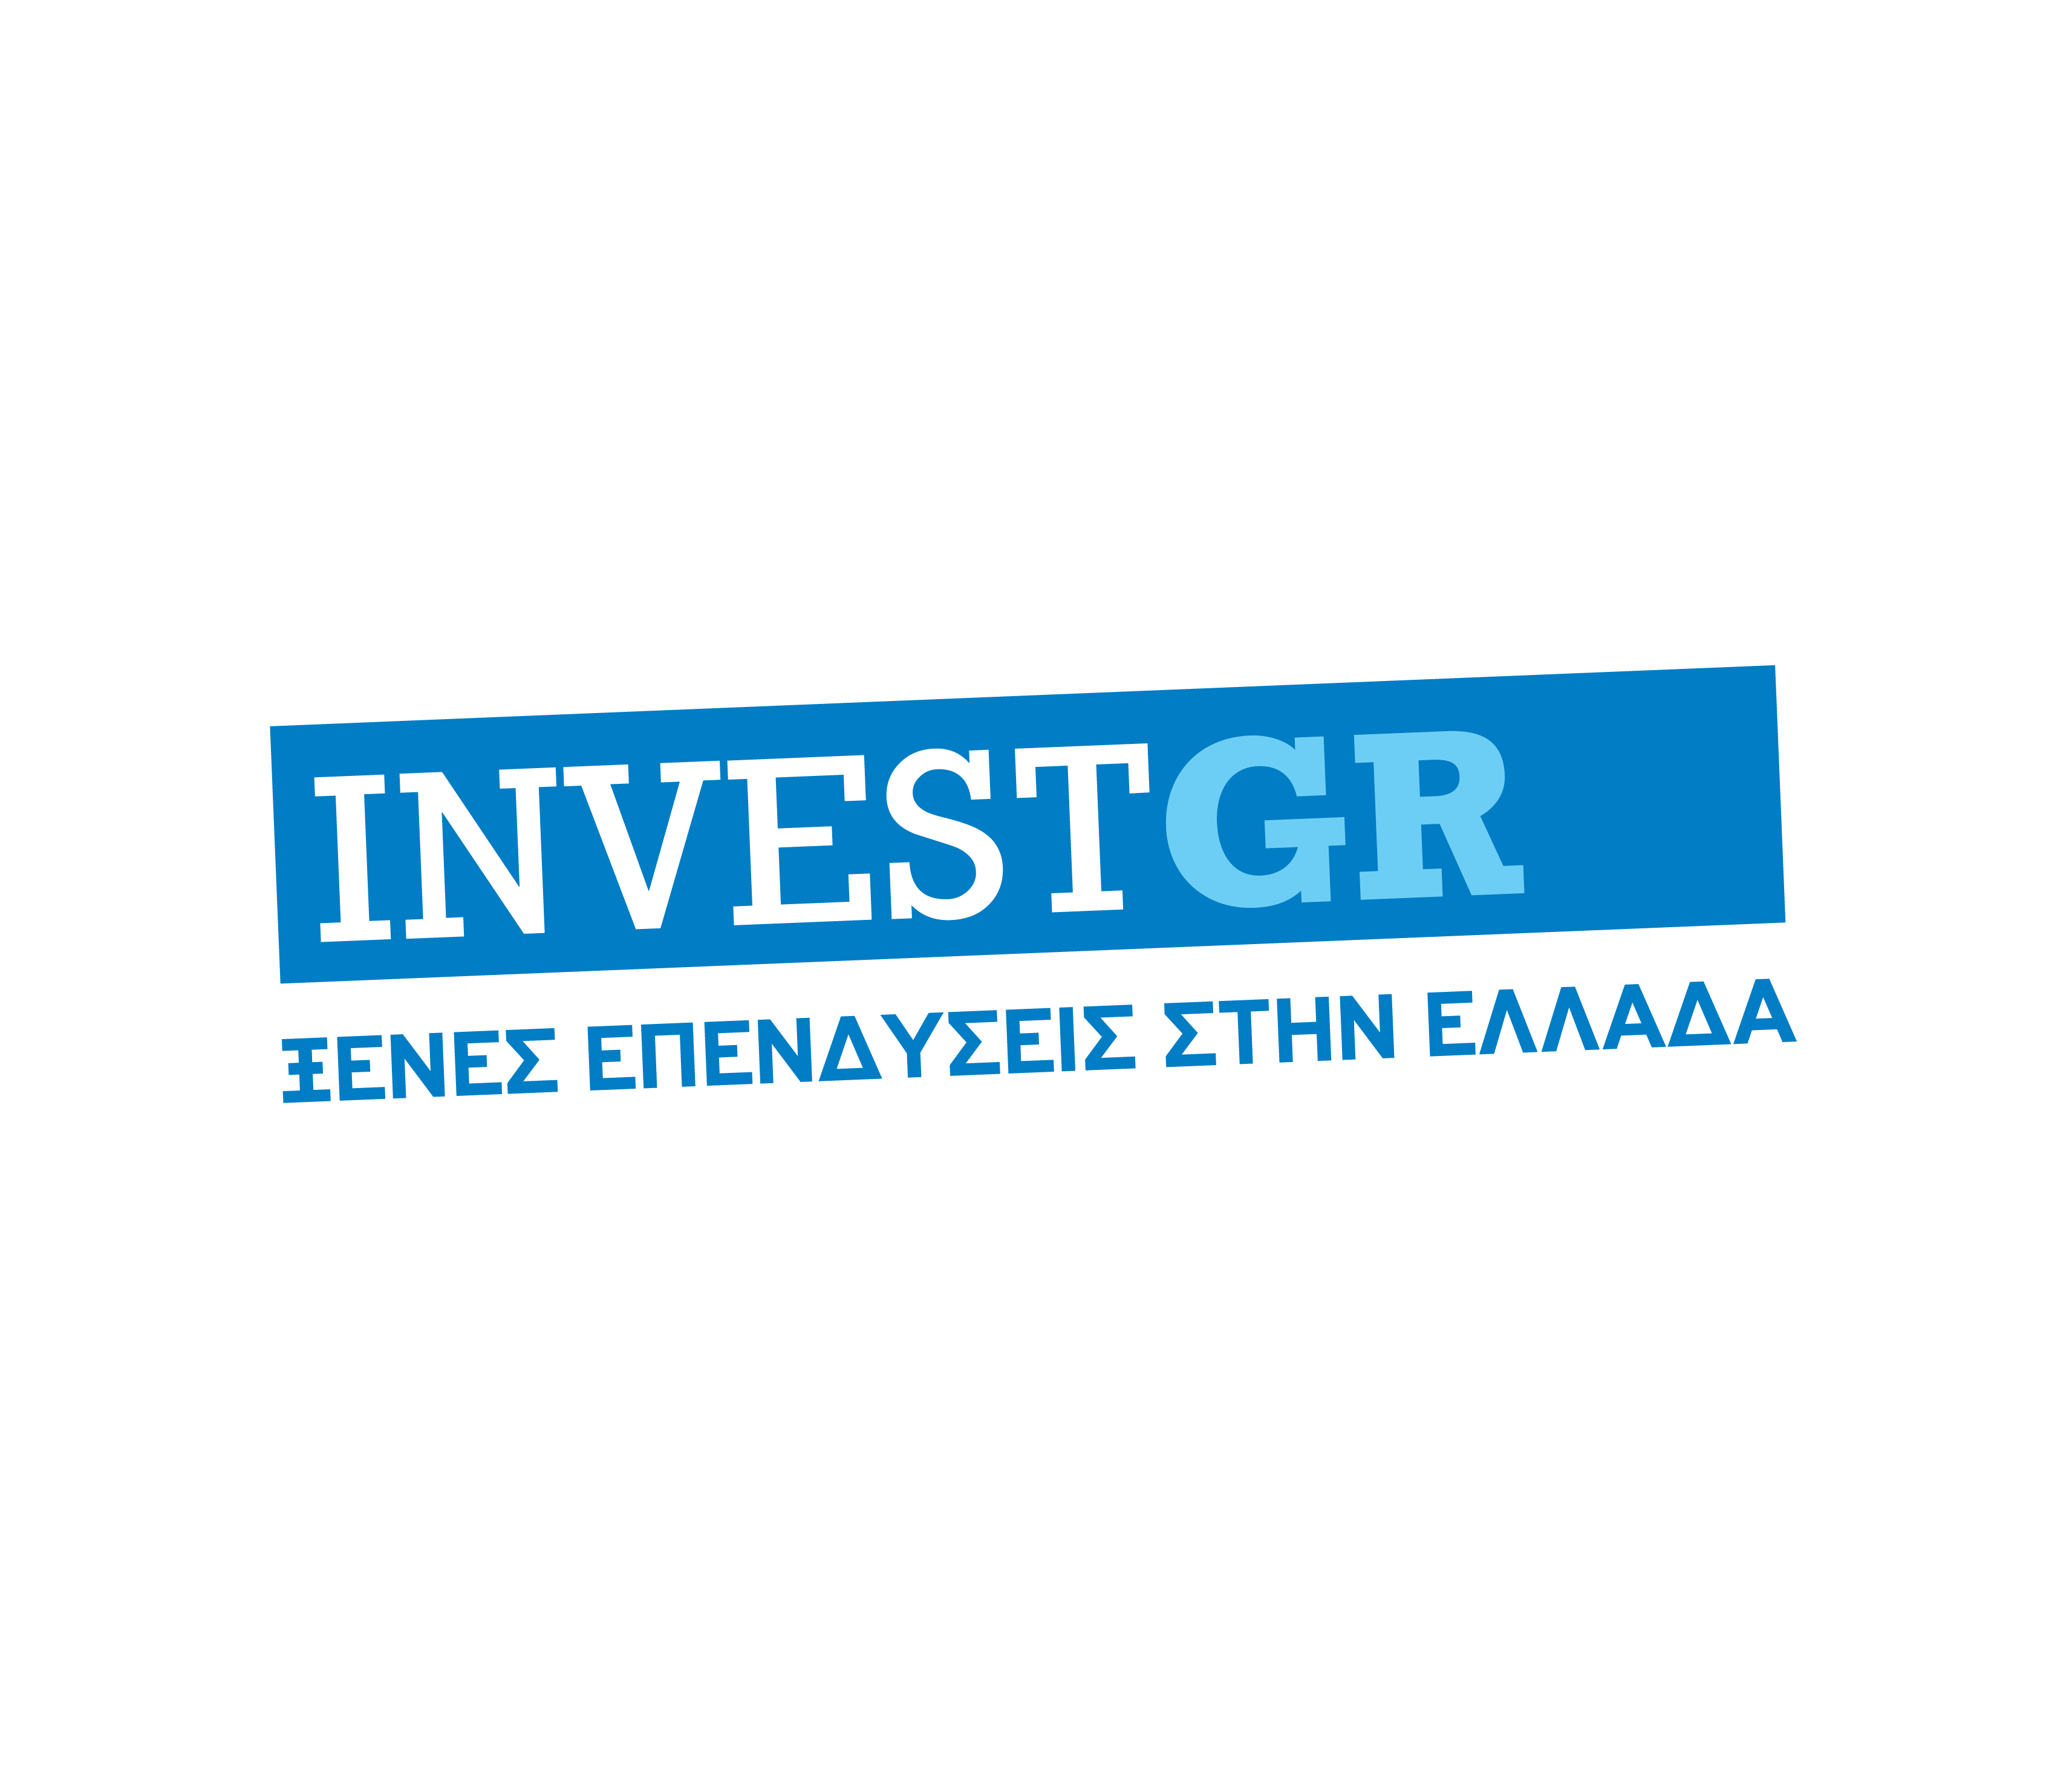 Μια νέα πρωτοβουλία για τις ξένες επενδύσεις στην Ελλάδα